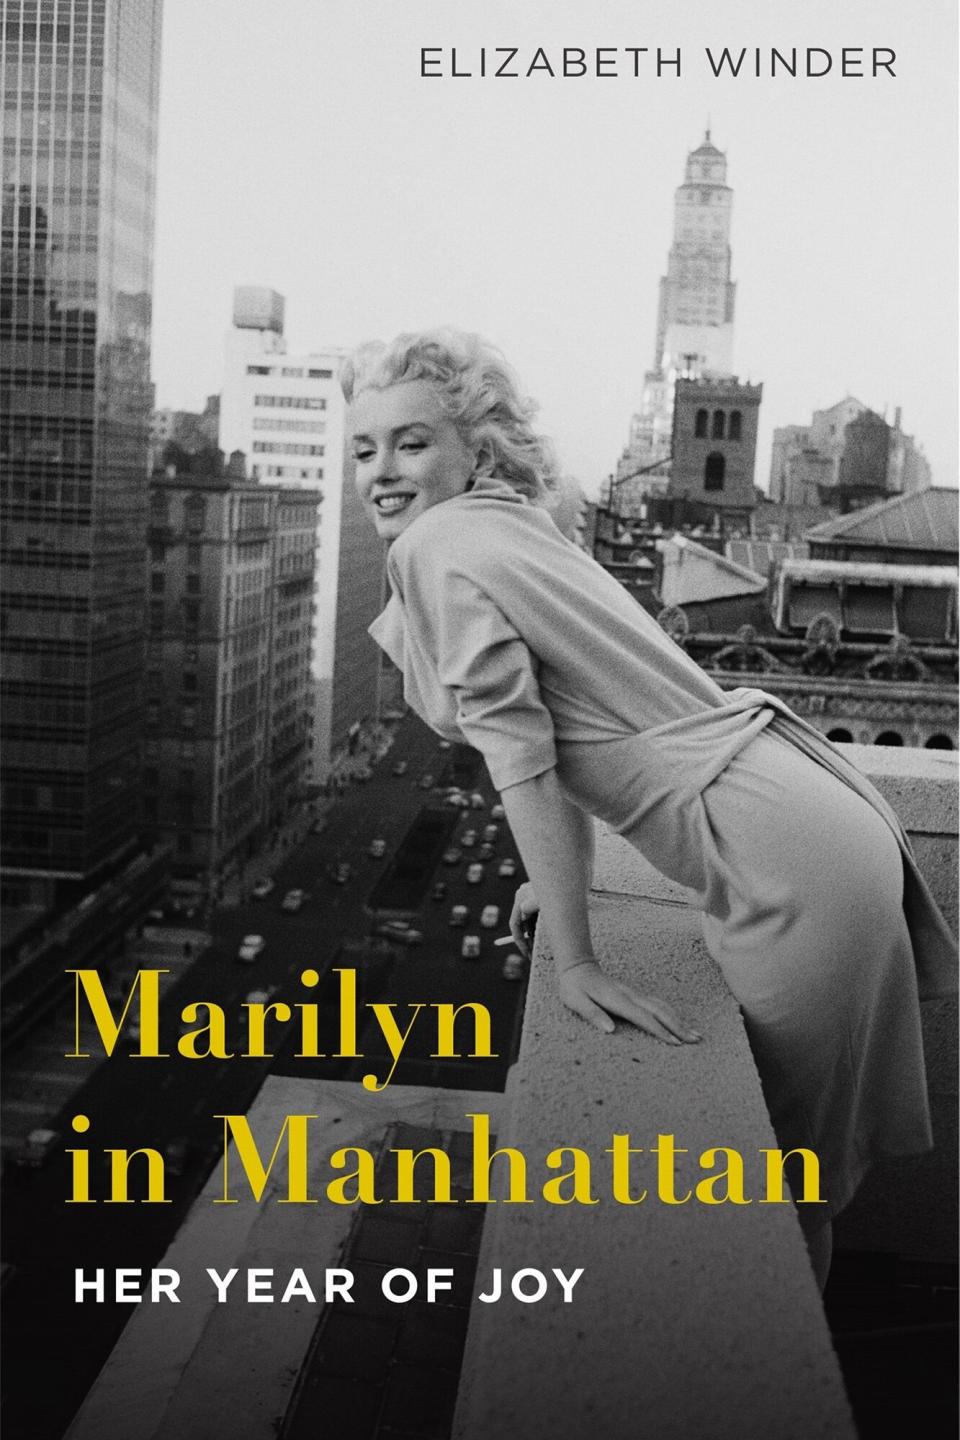 Marilyn in Manhattan: Her Year of Joy Hardcover – March 14, 2017 by Elizabeth Winder